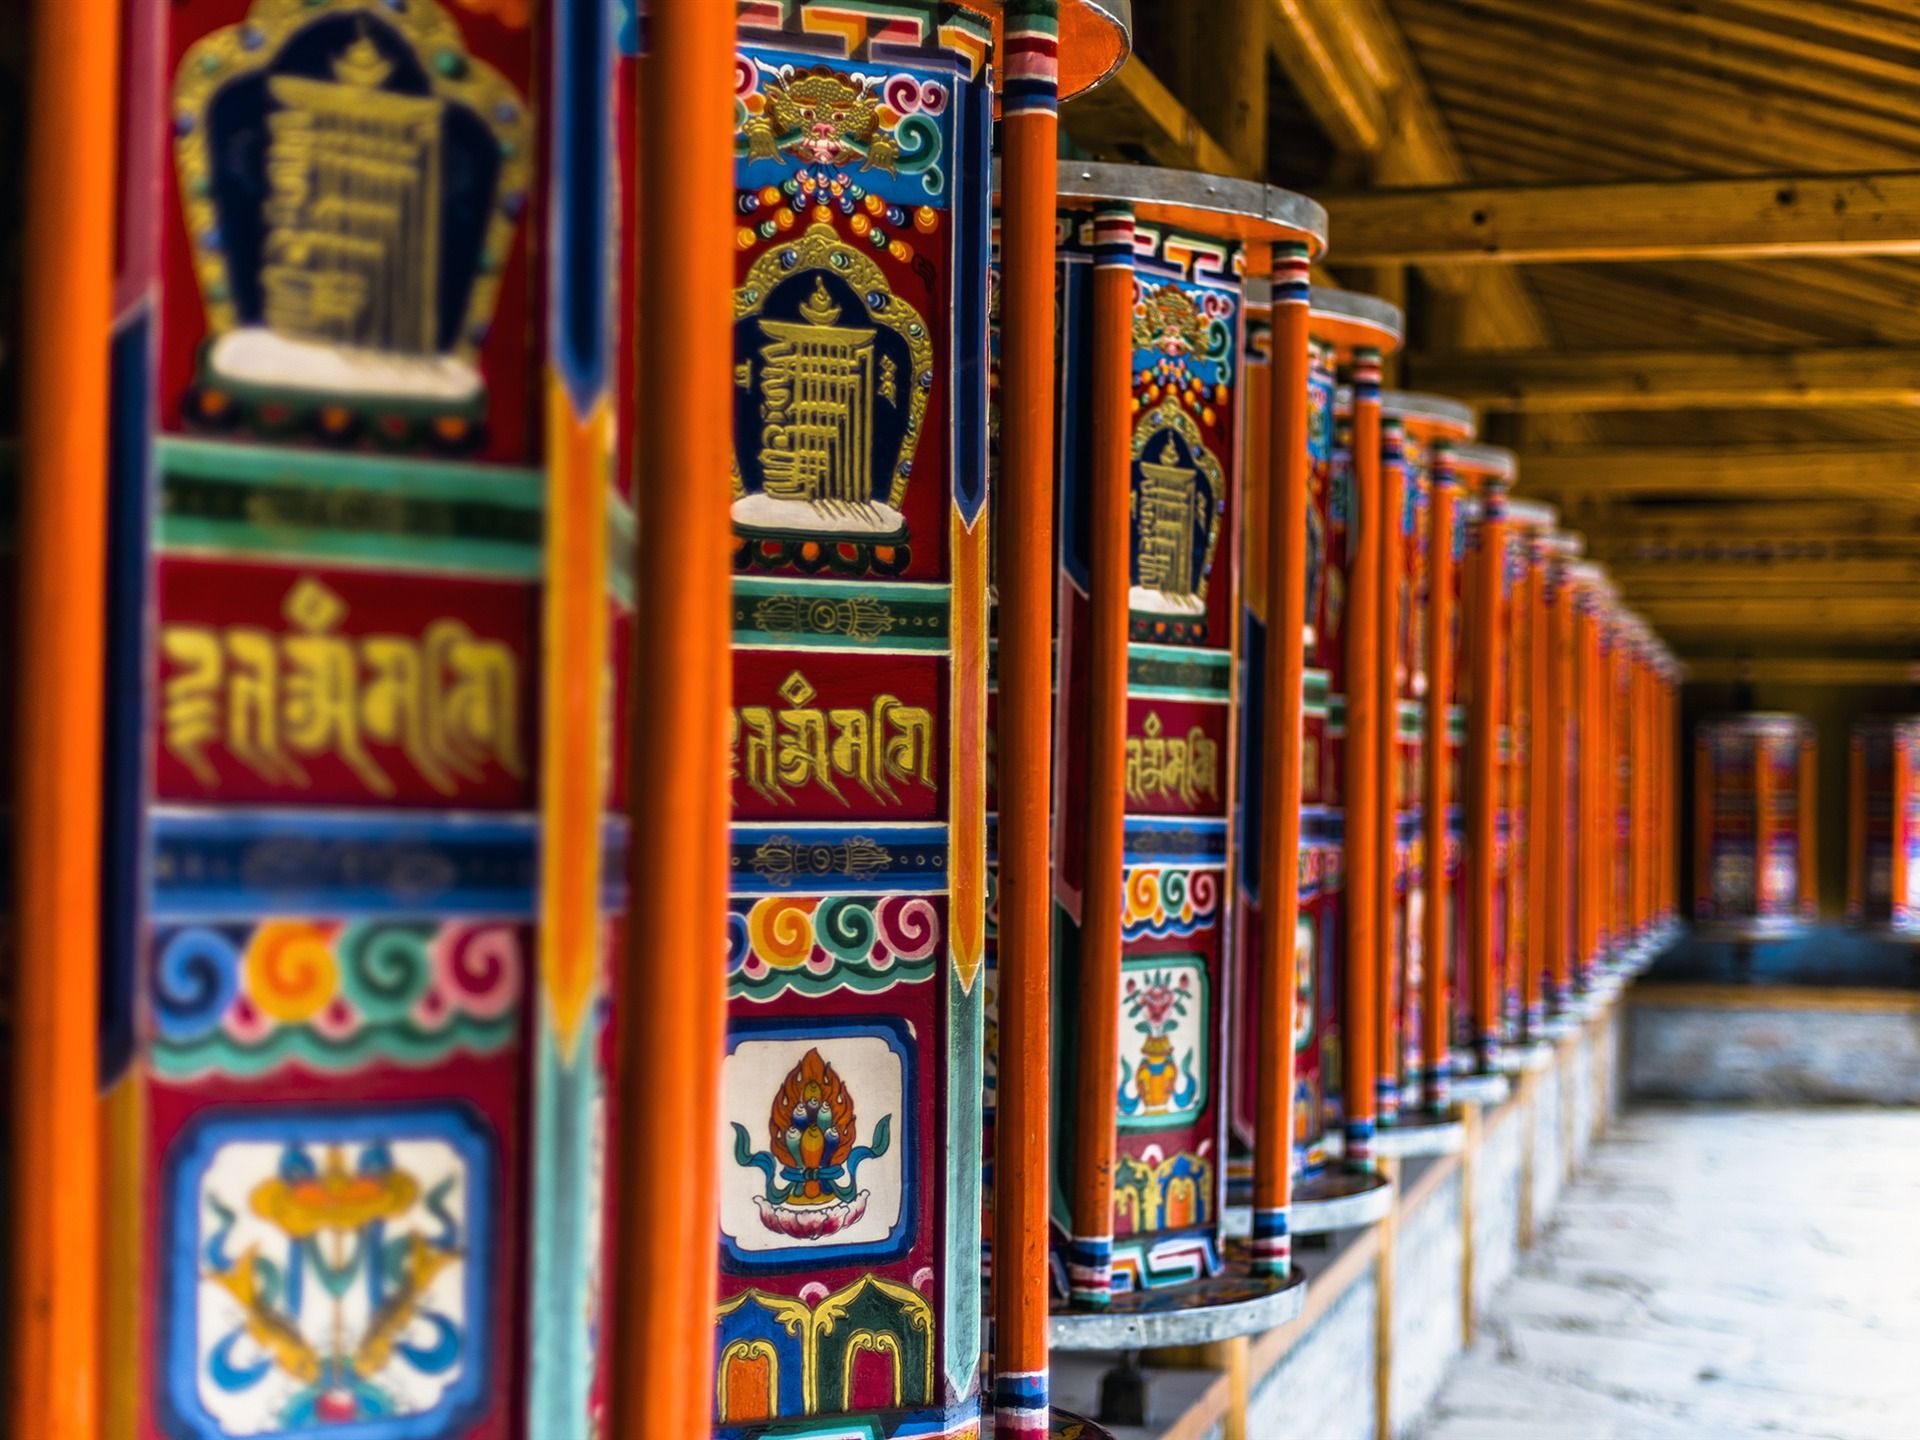 تصویر نقش و نگار های رنگی زیبا به زبان تبتی در معابد